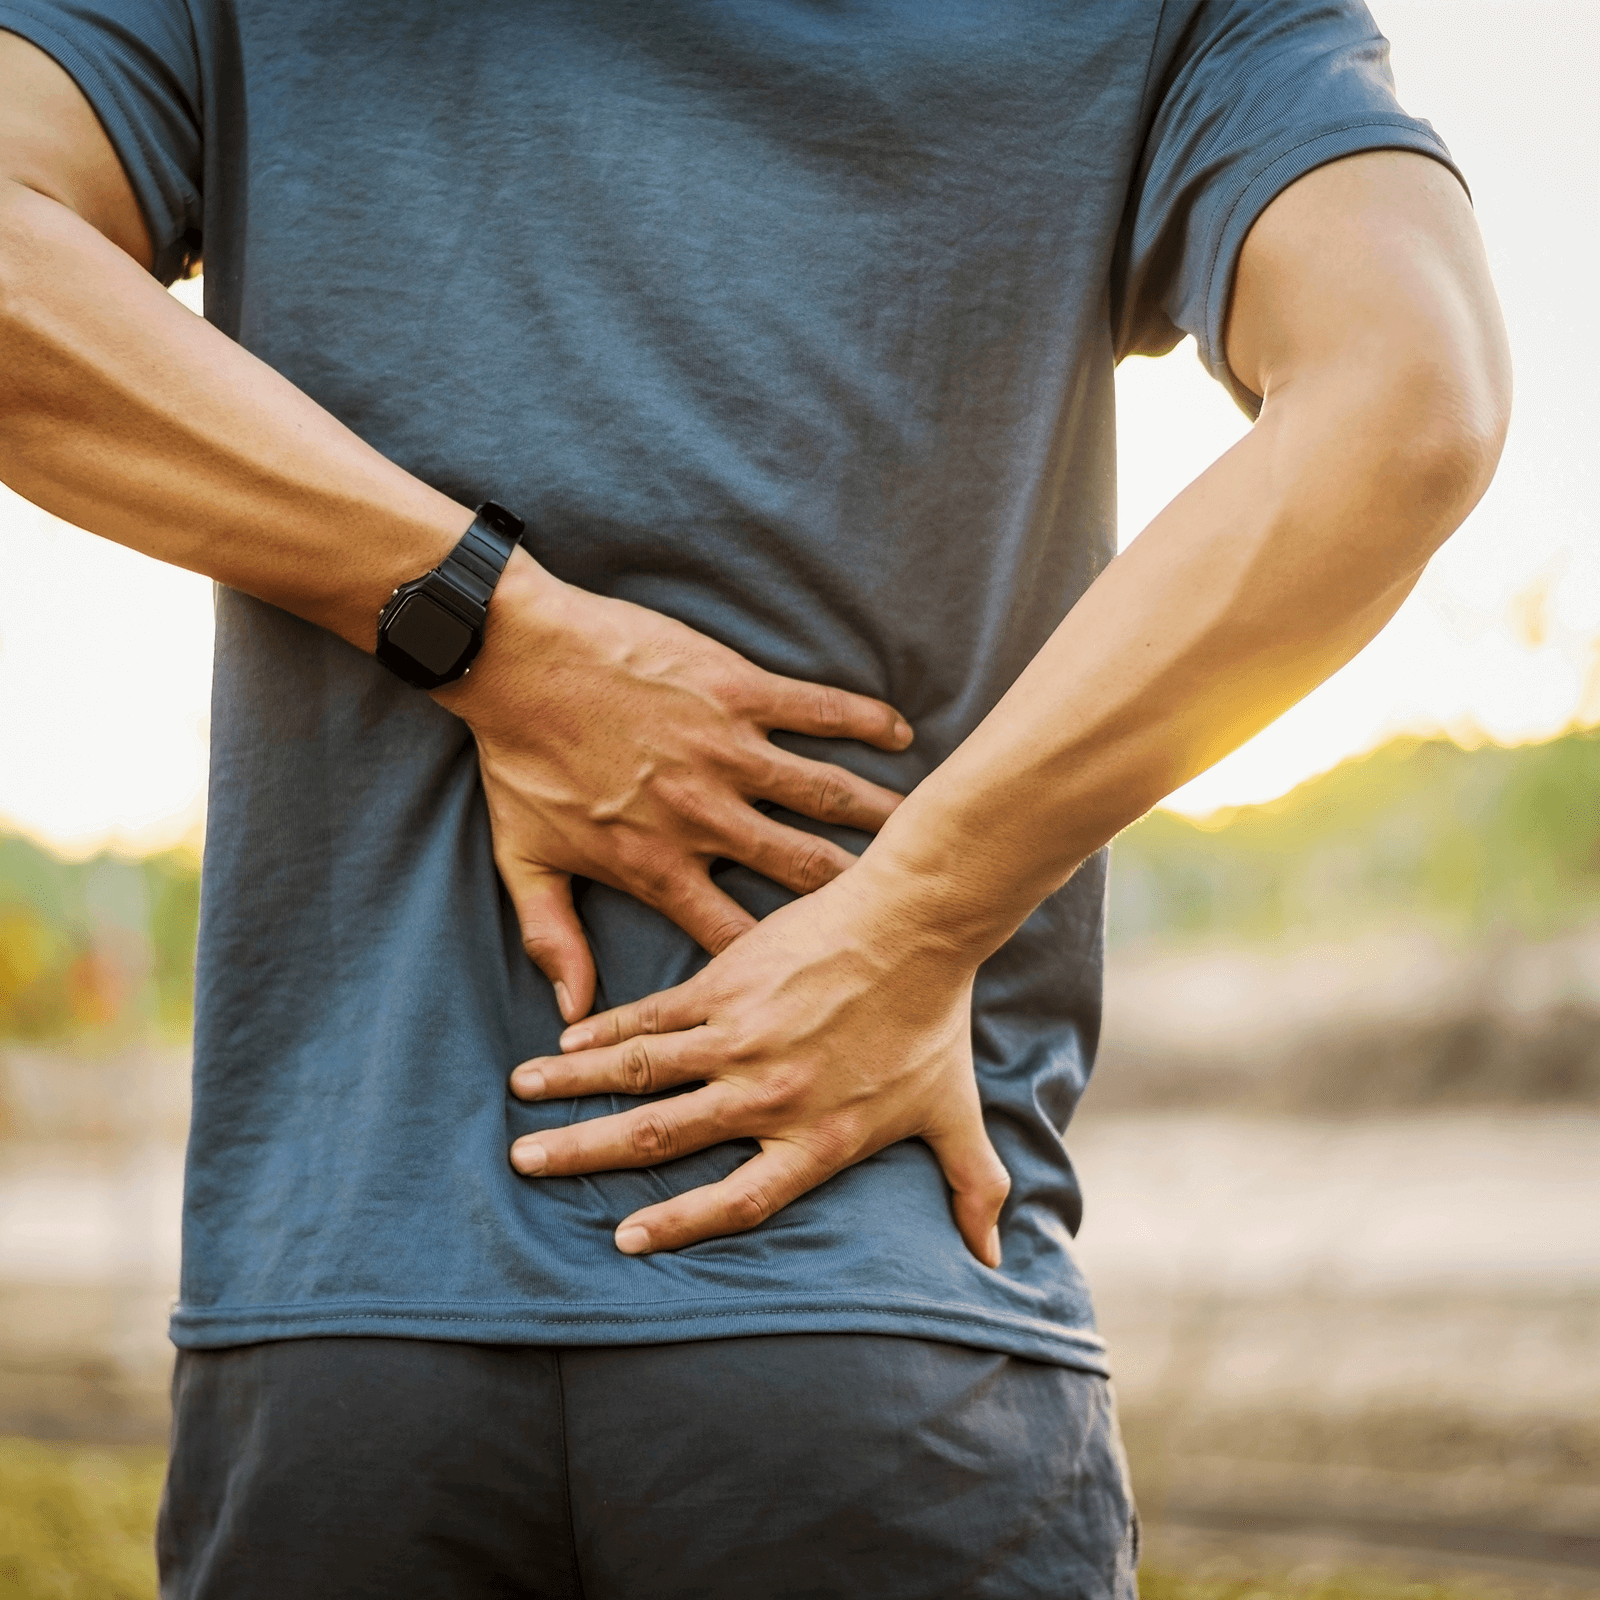 Rückenschmerzen treffen viele Menschen